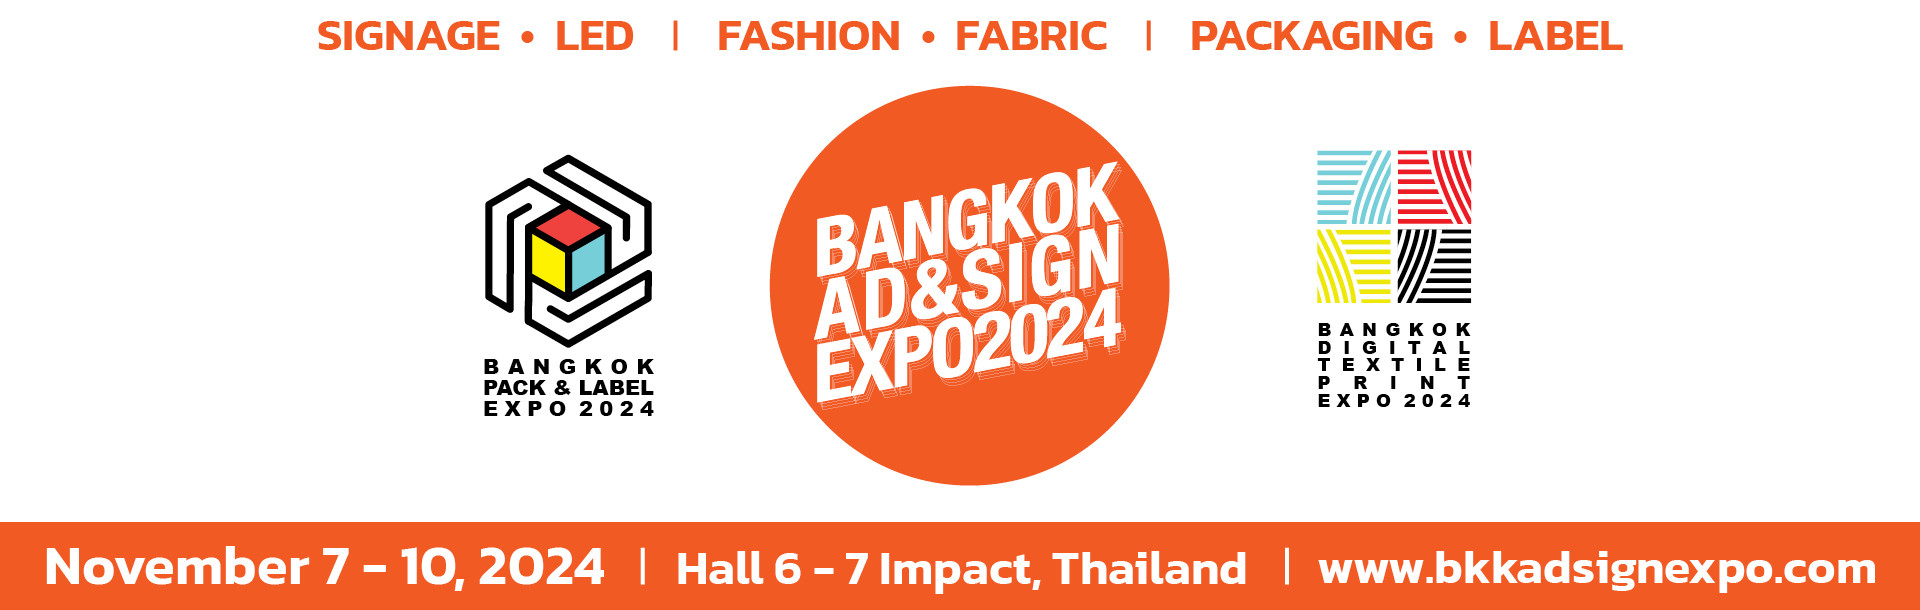 Bangkok Ad is & Sign Expo 2024